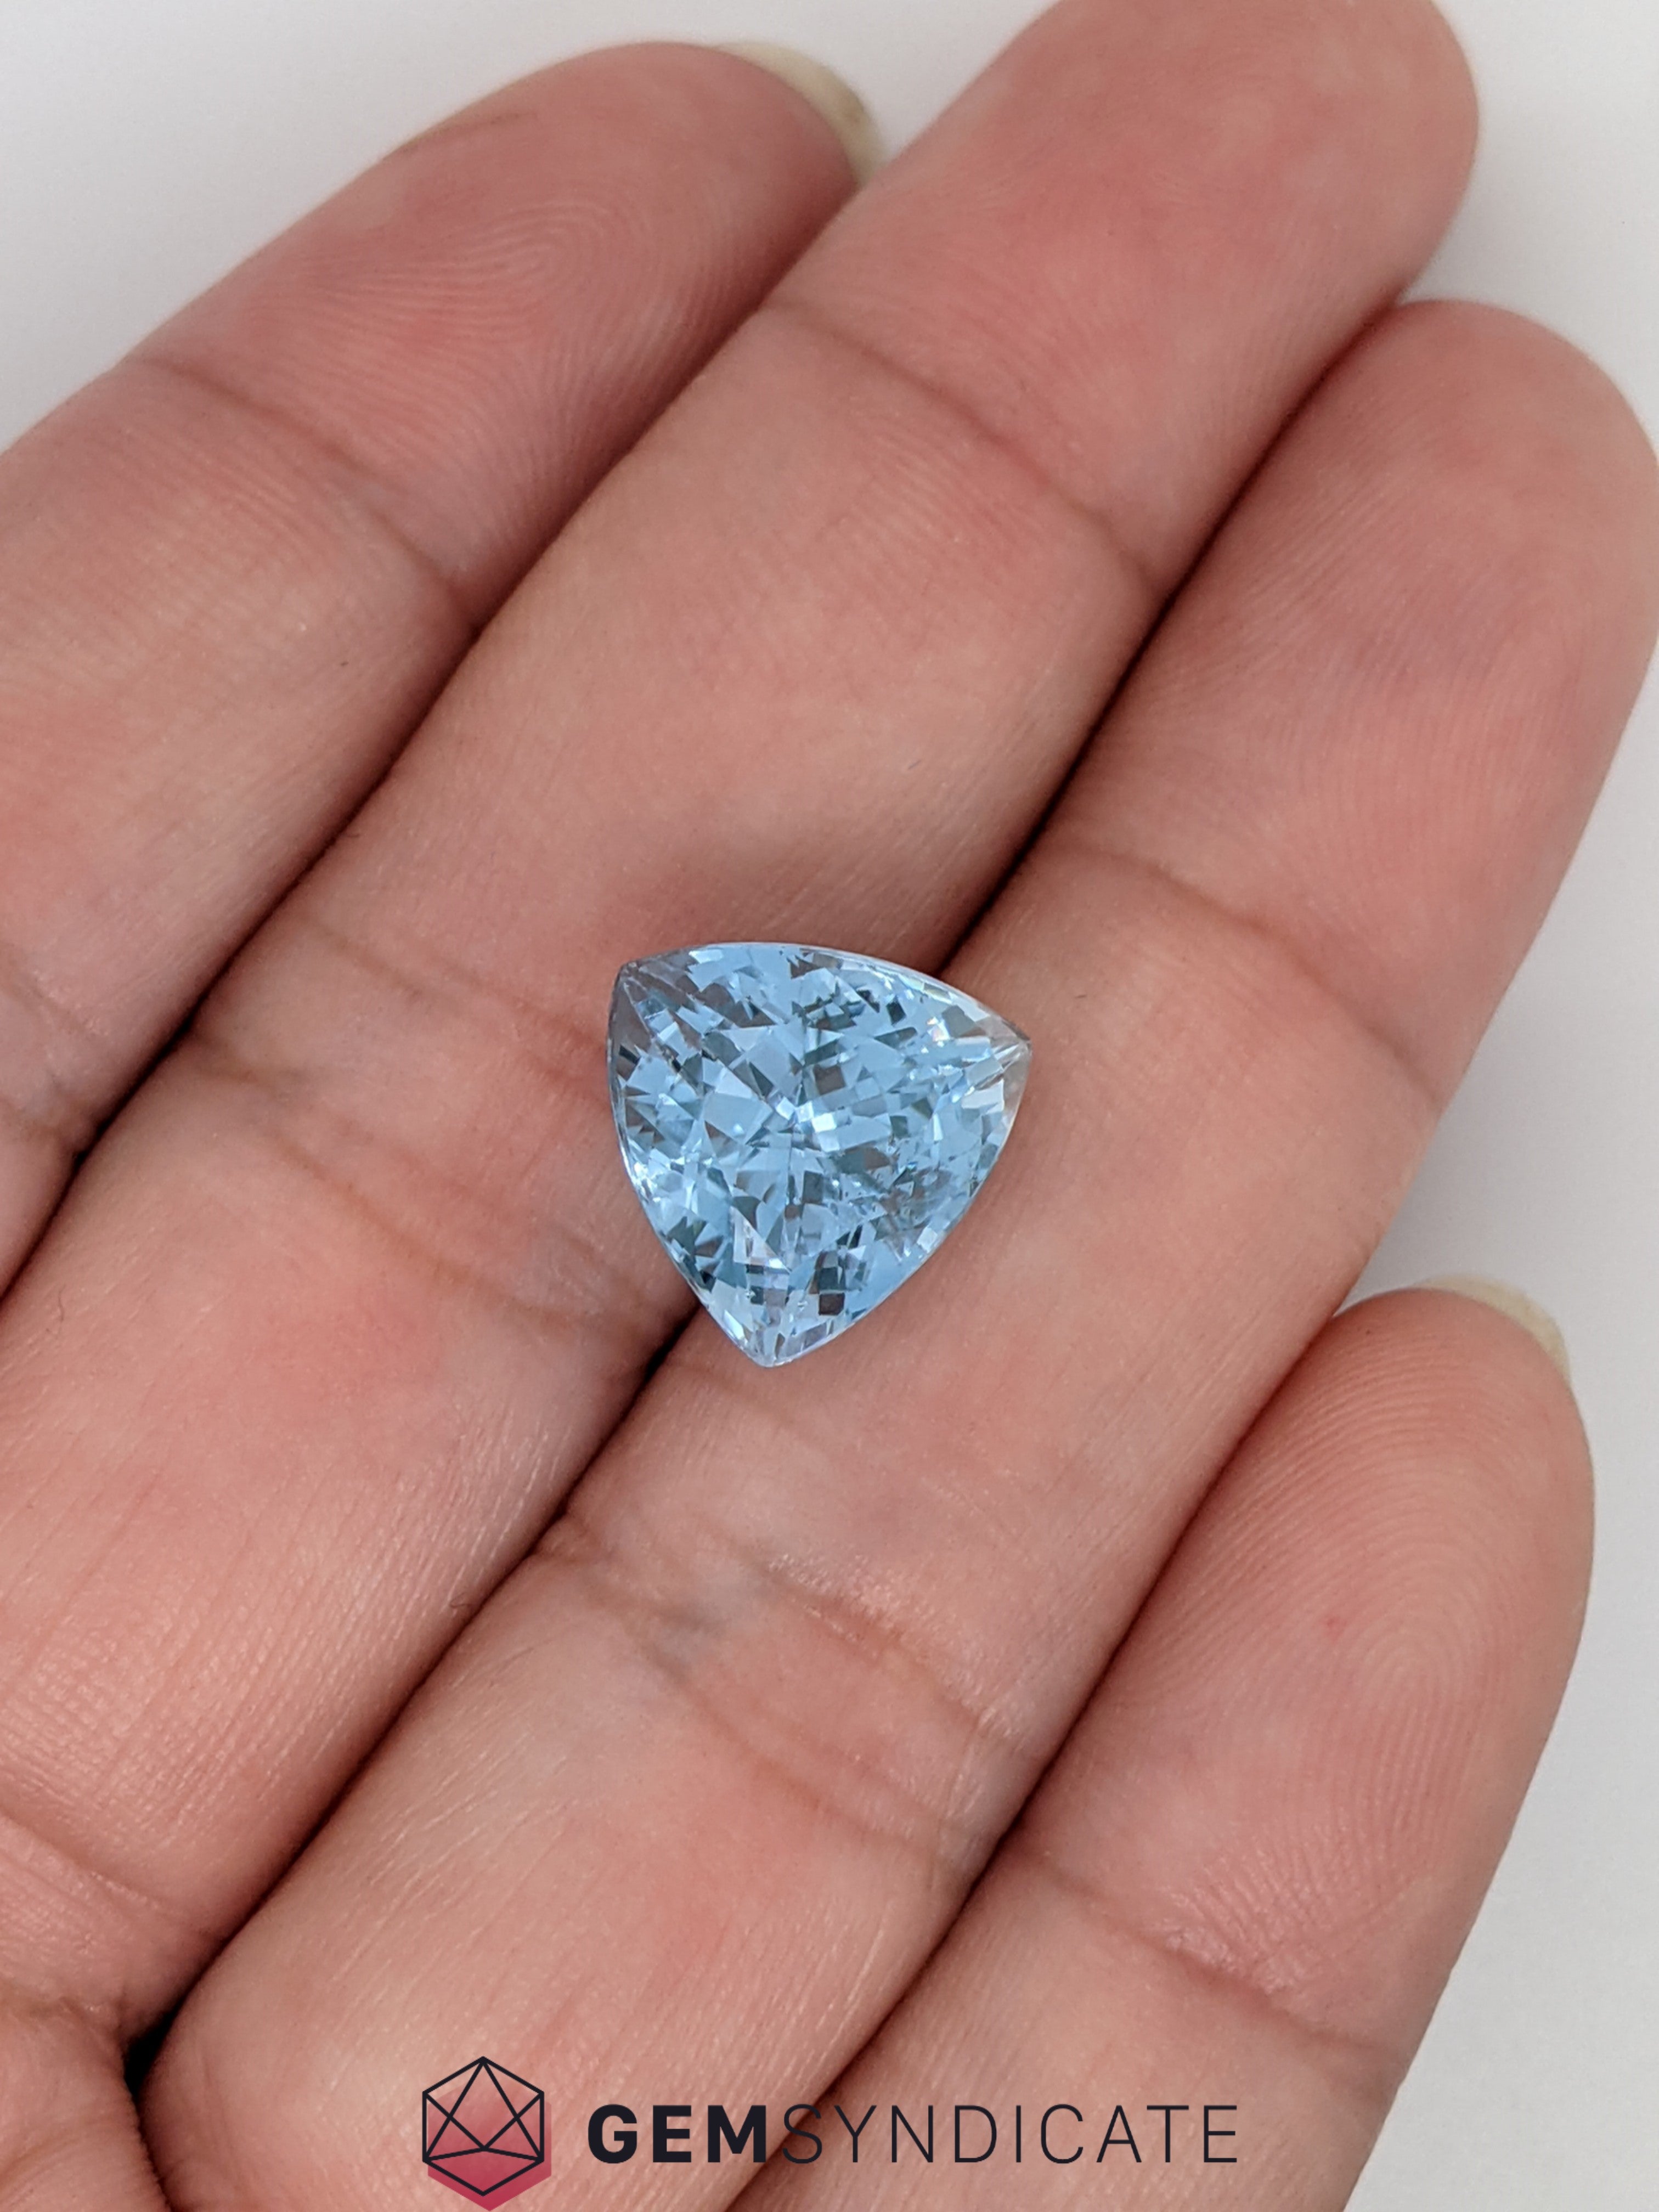 Sumptuous Trillion Shape Blue Aquamarine 5.92ct